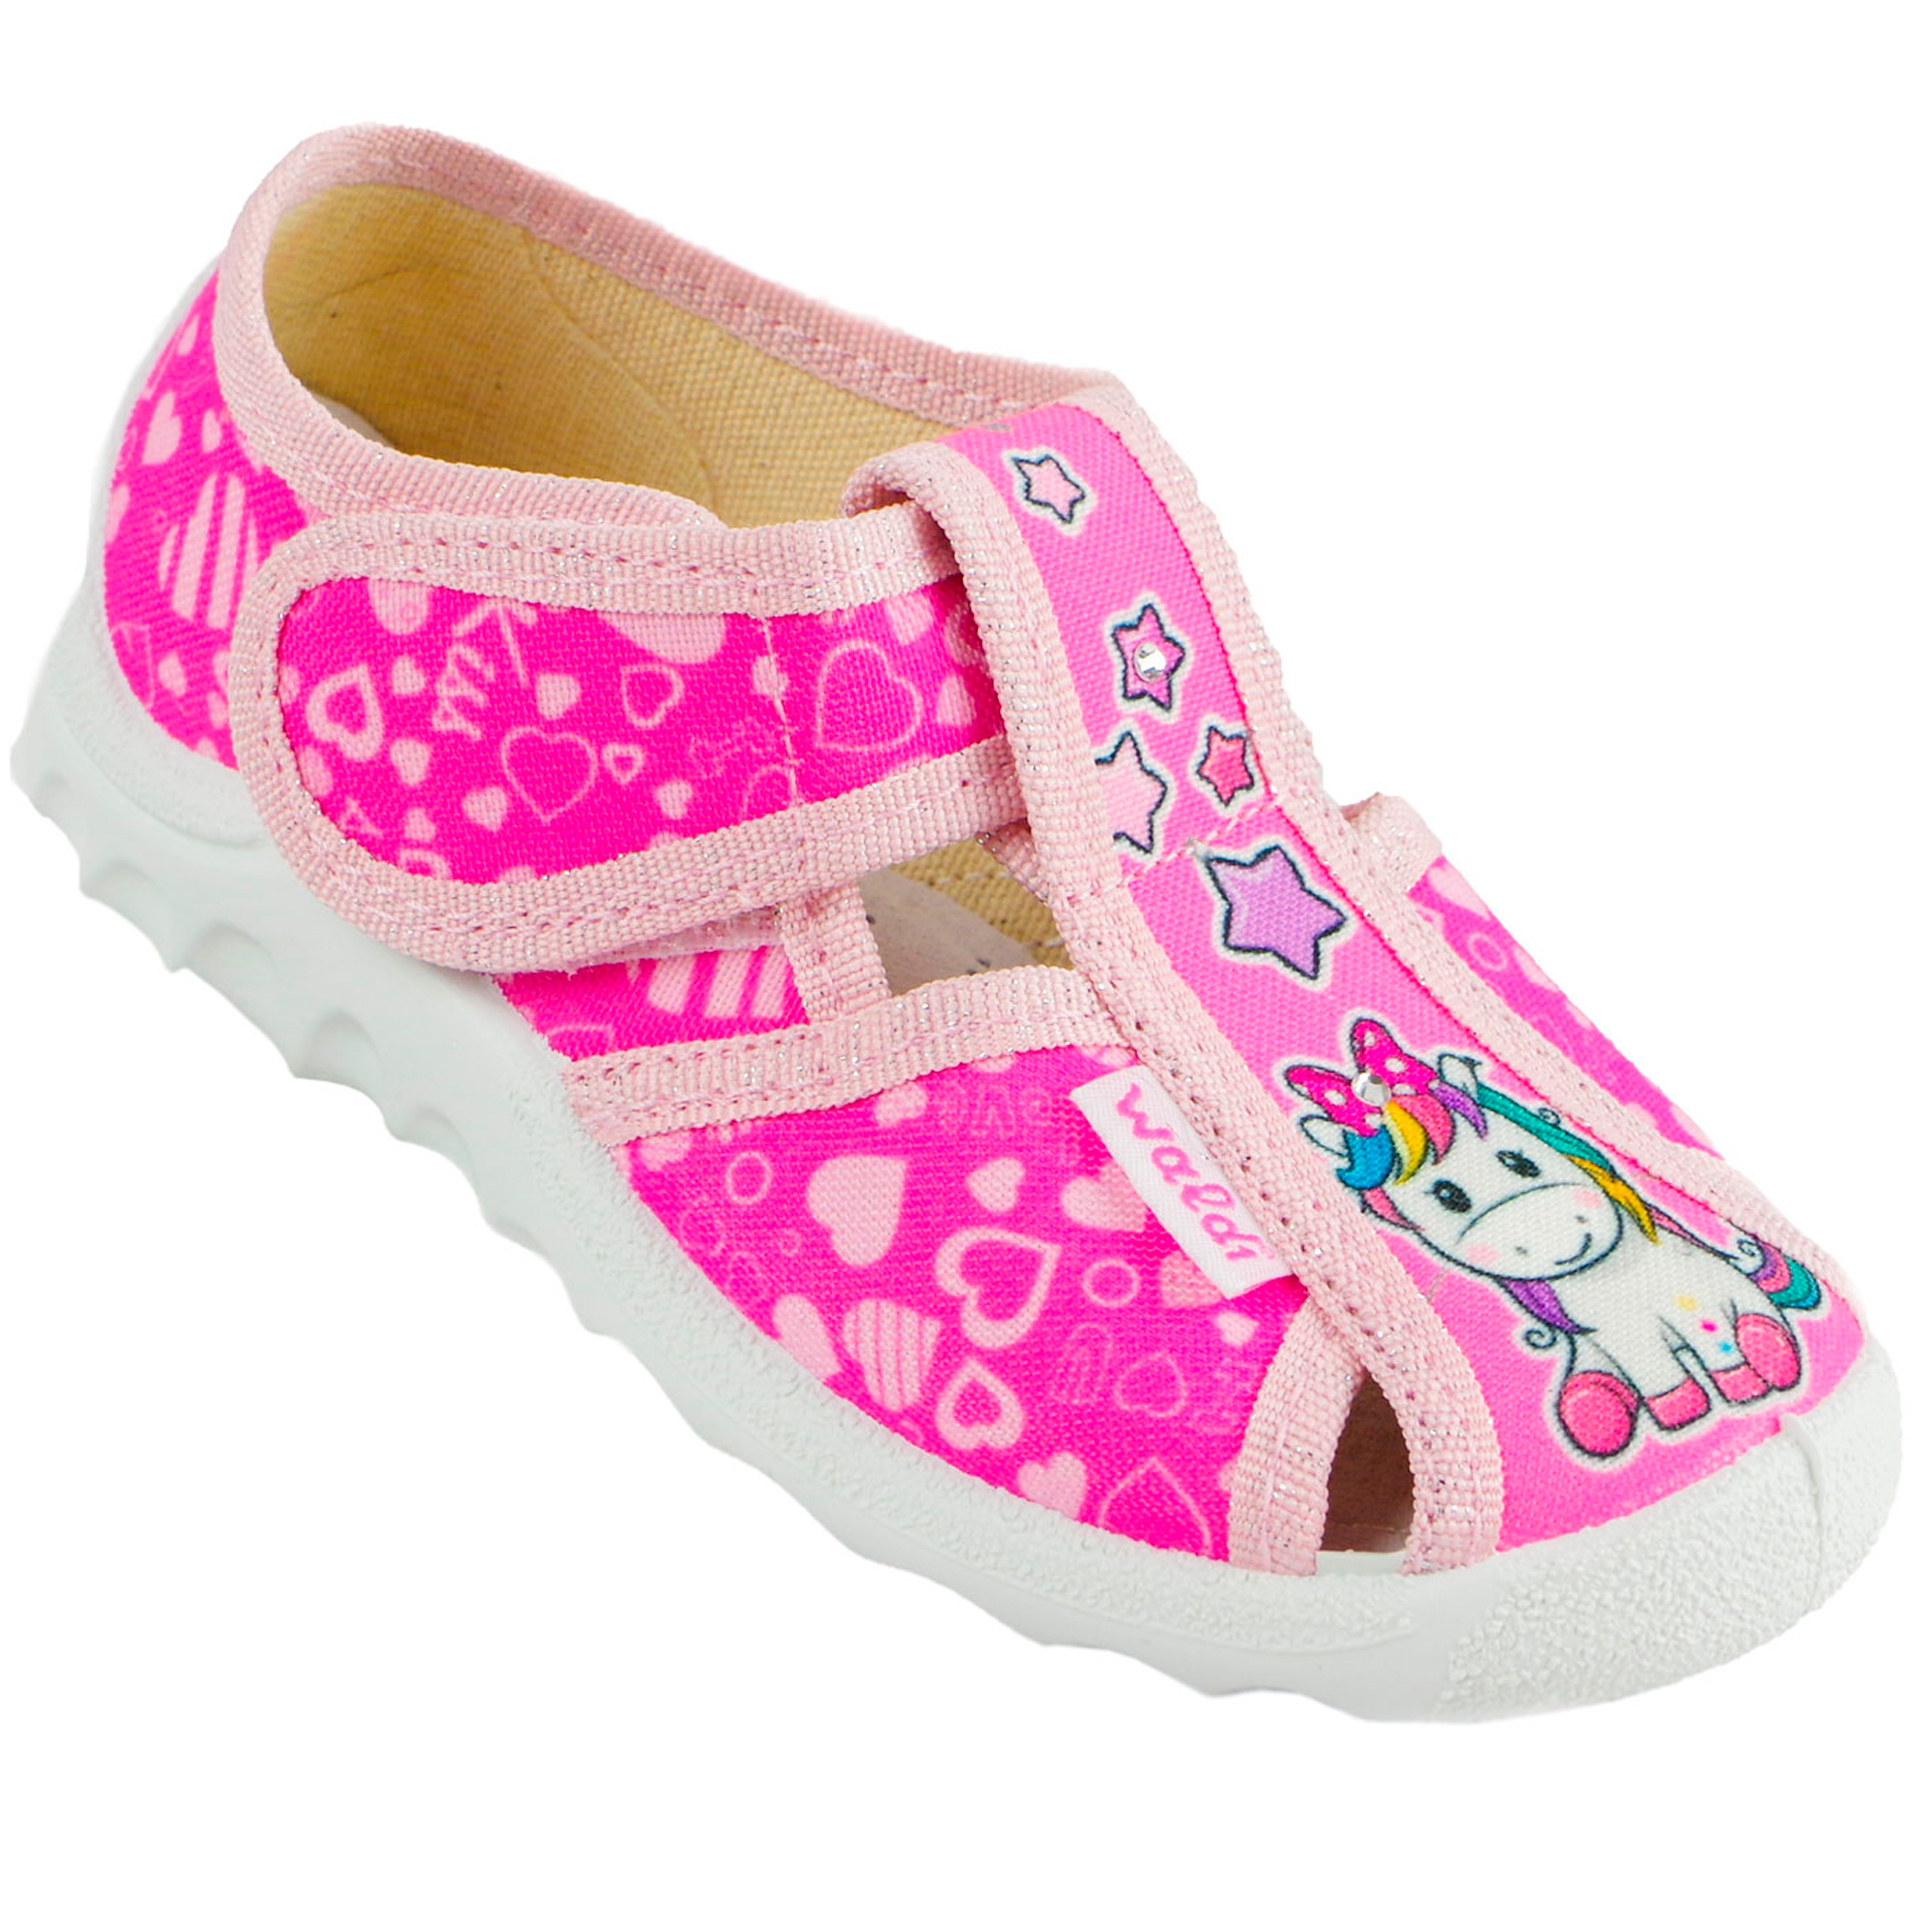 Текстильная обувь для девочек Тапочки Маша (2019) цвет Розовый 21-27 размеры – Sole Kids. Фото 1